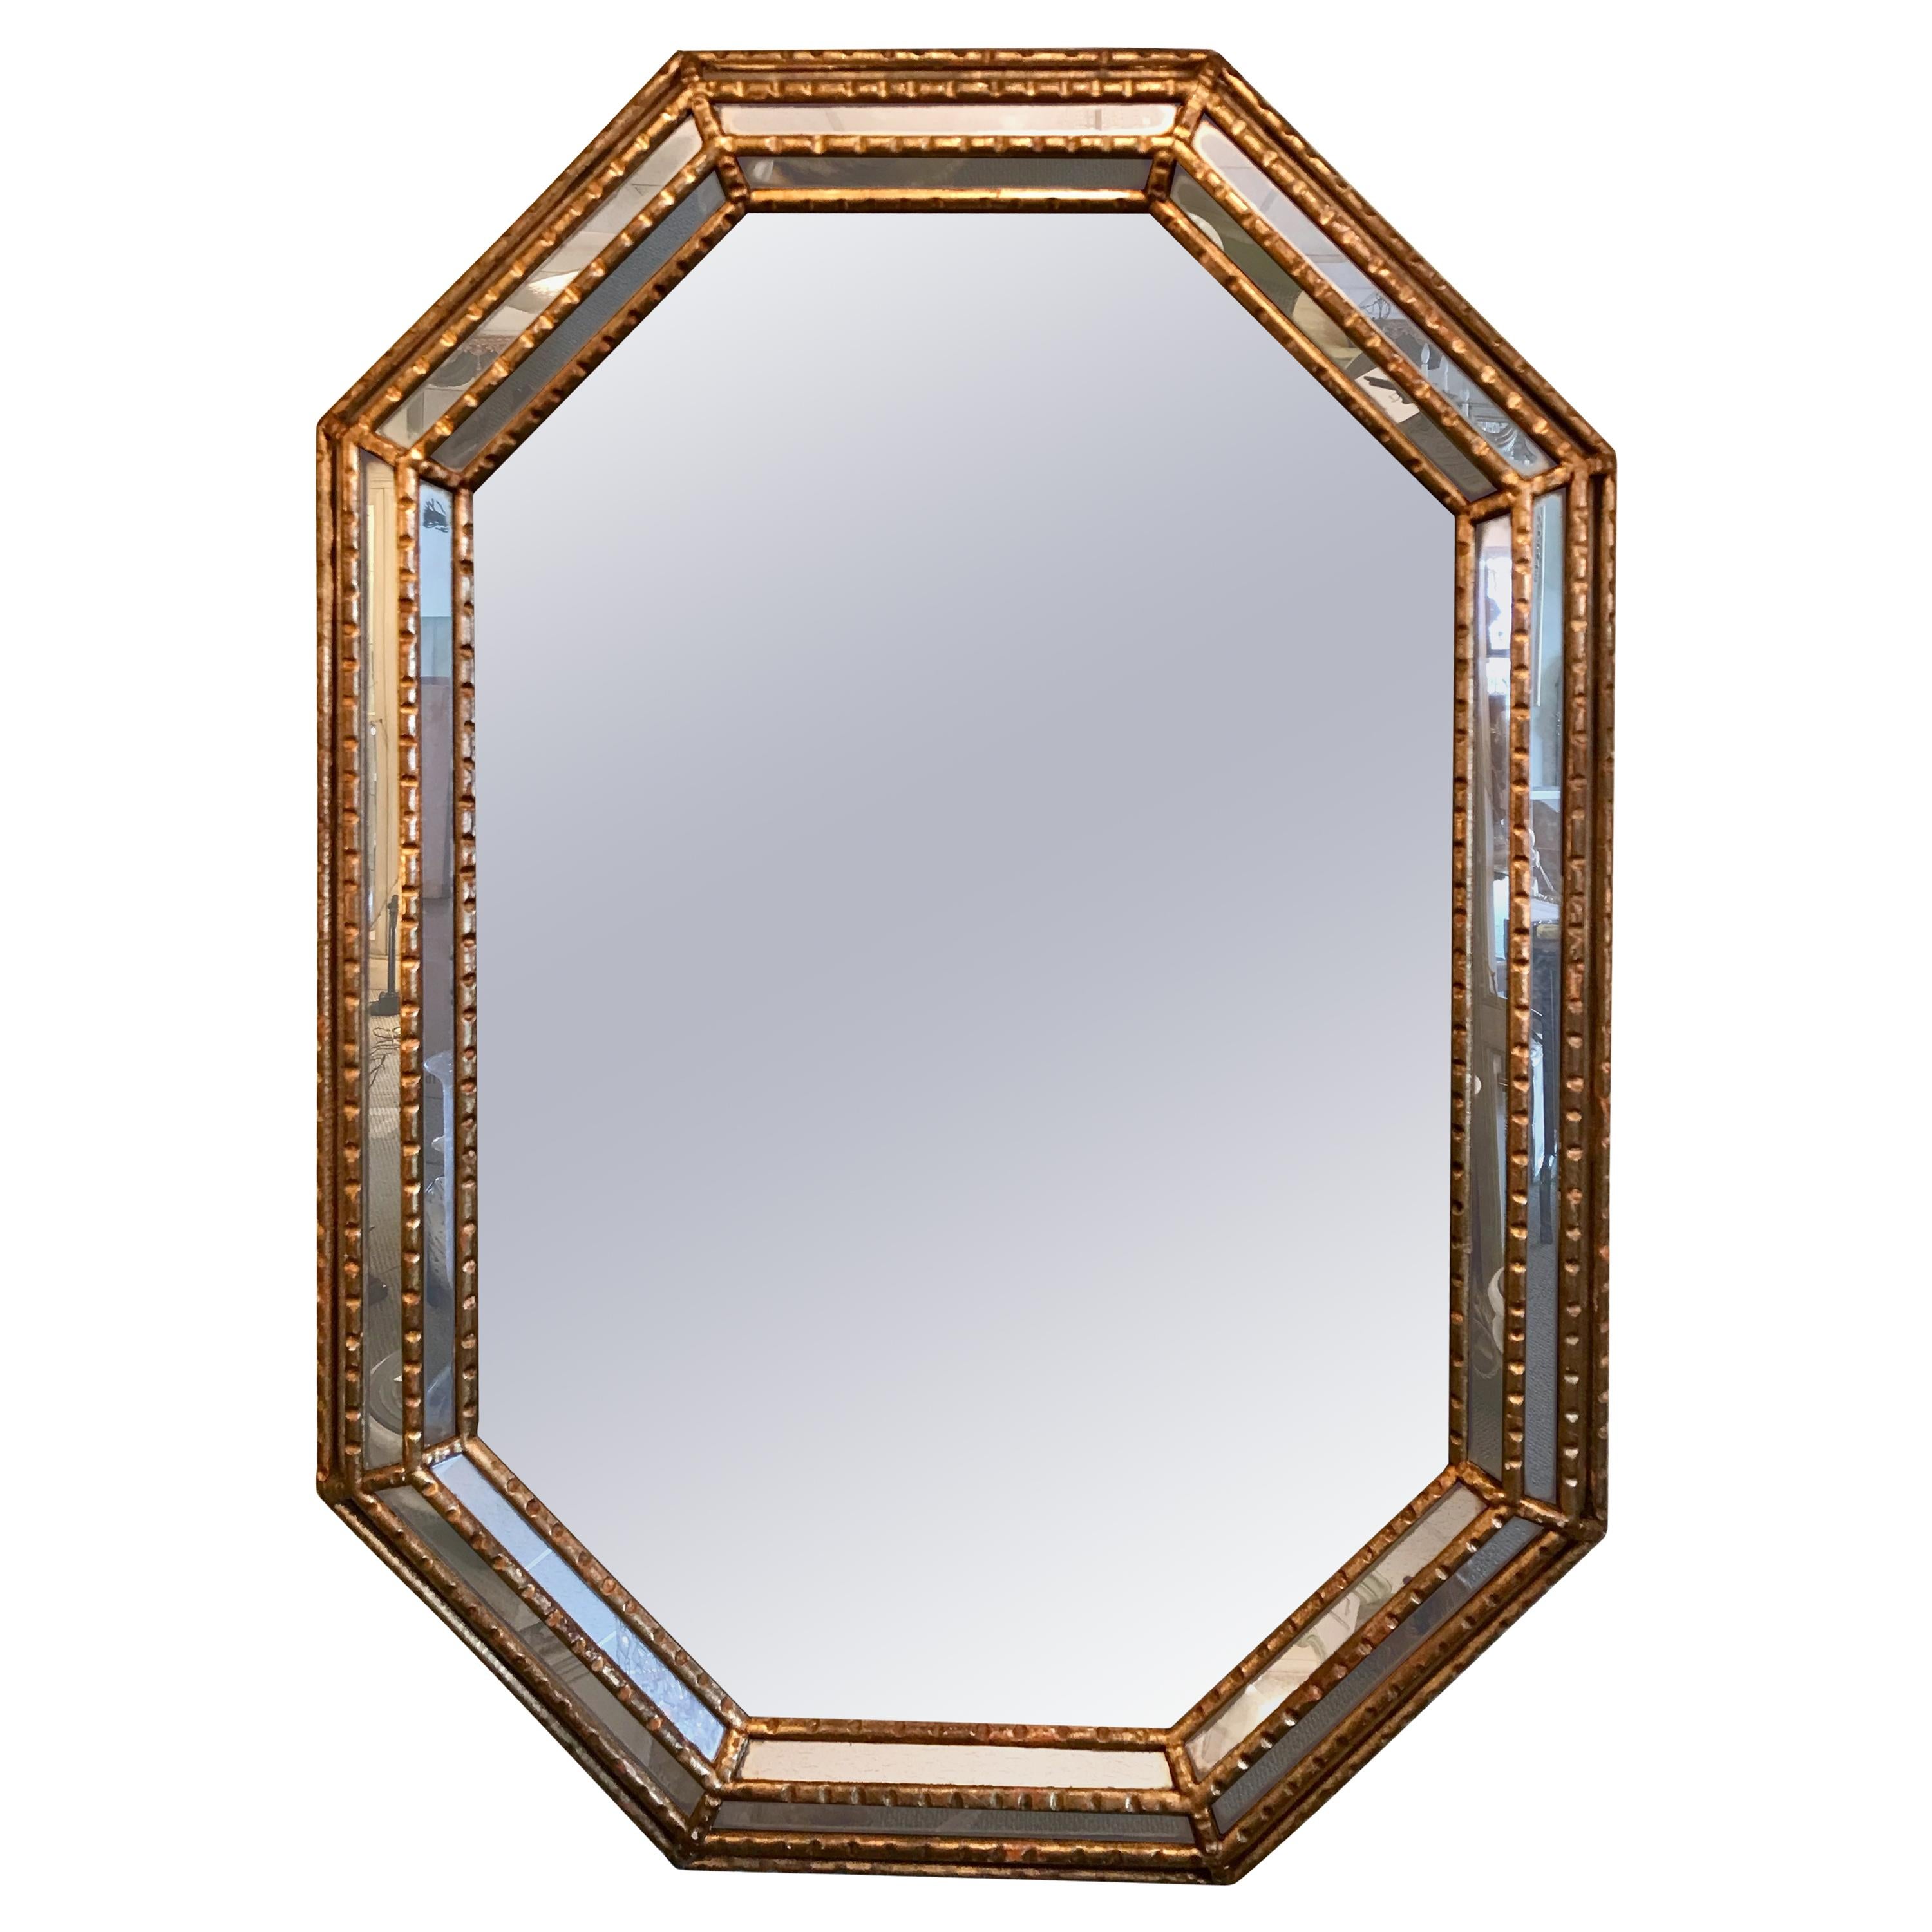 Midcentury Italian Mirror